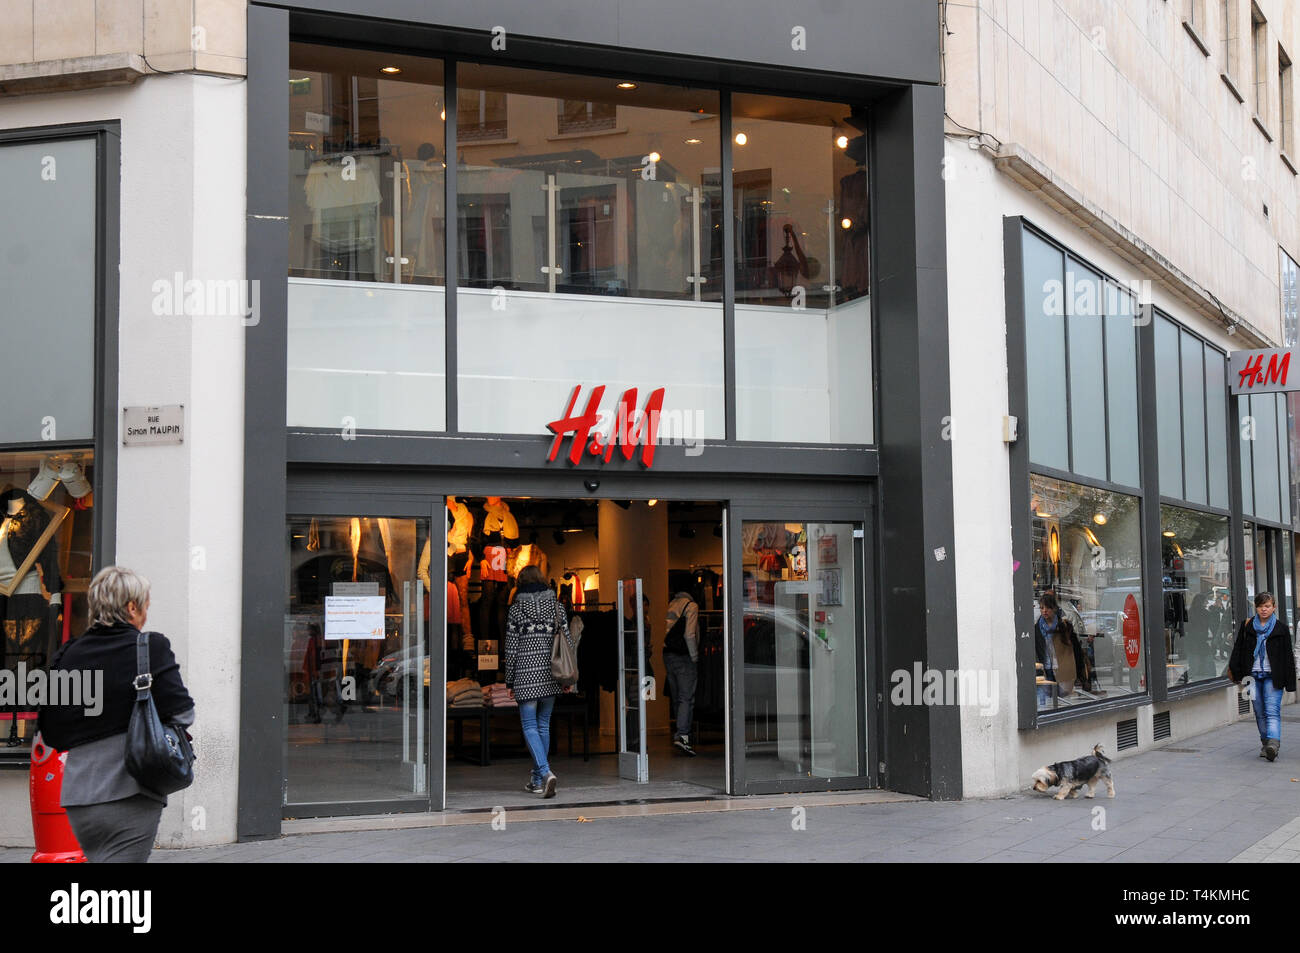 H&M fashion shop, Lyon, France Stock Photo - Alamy